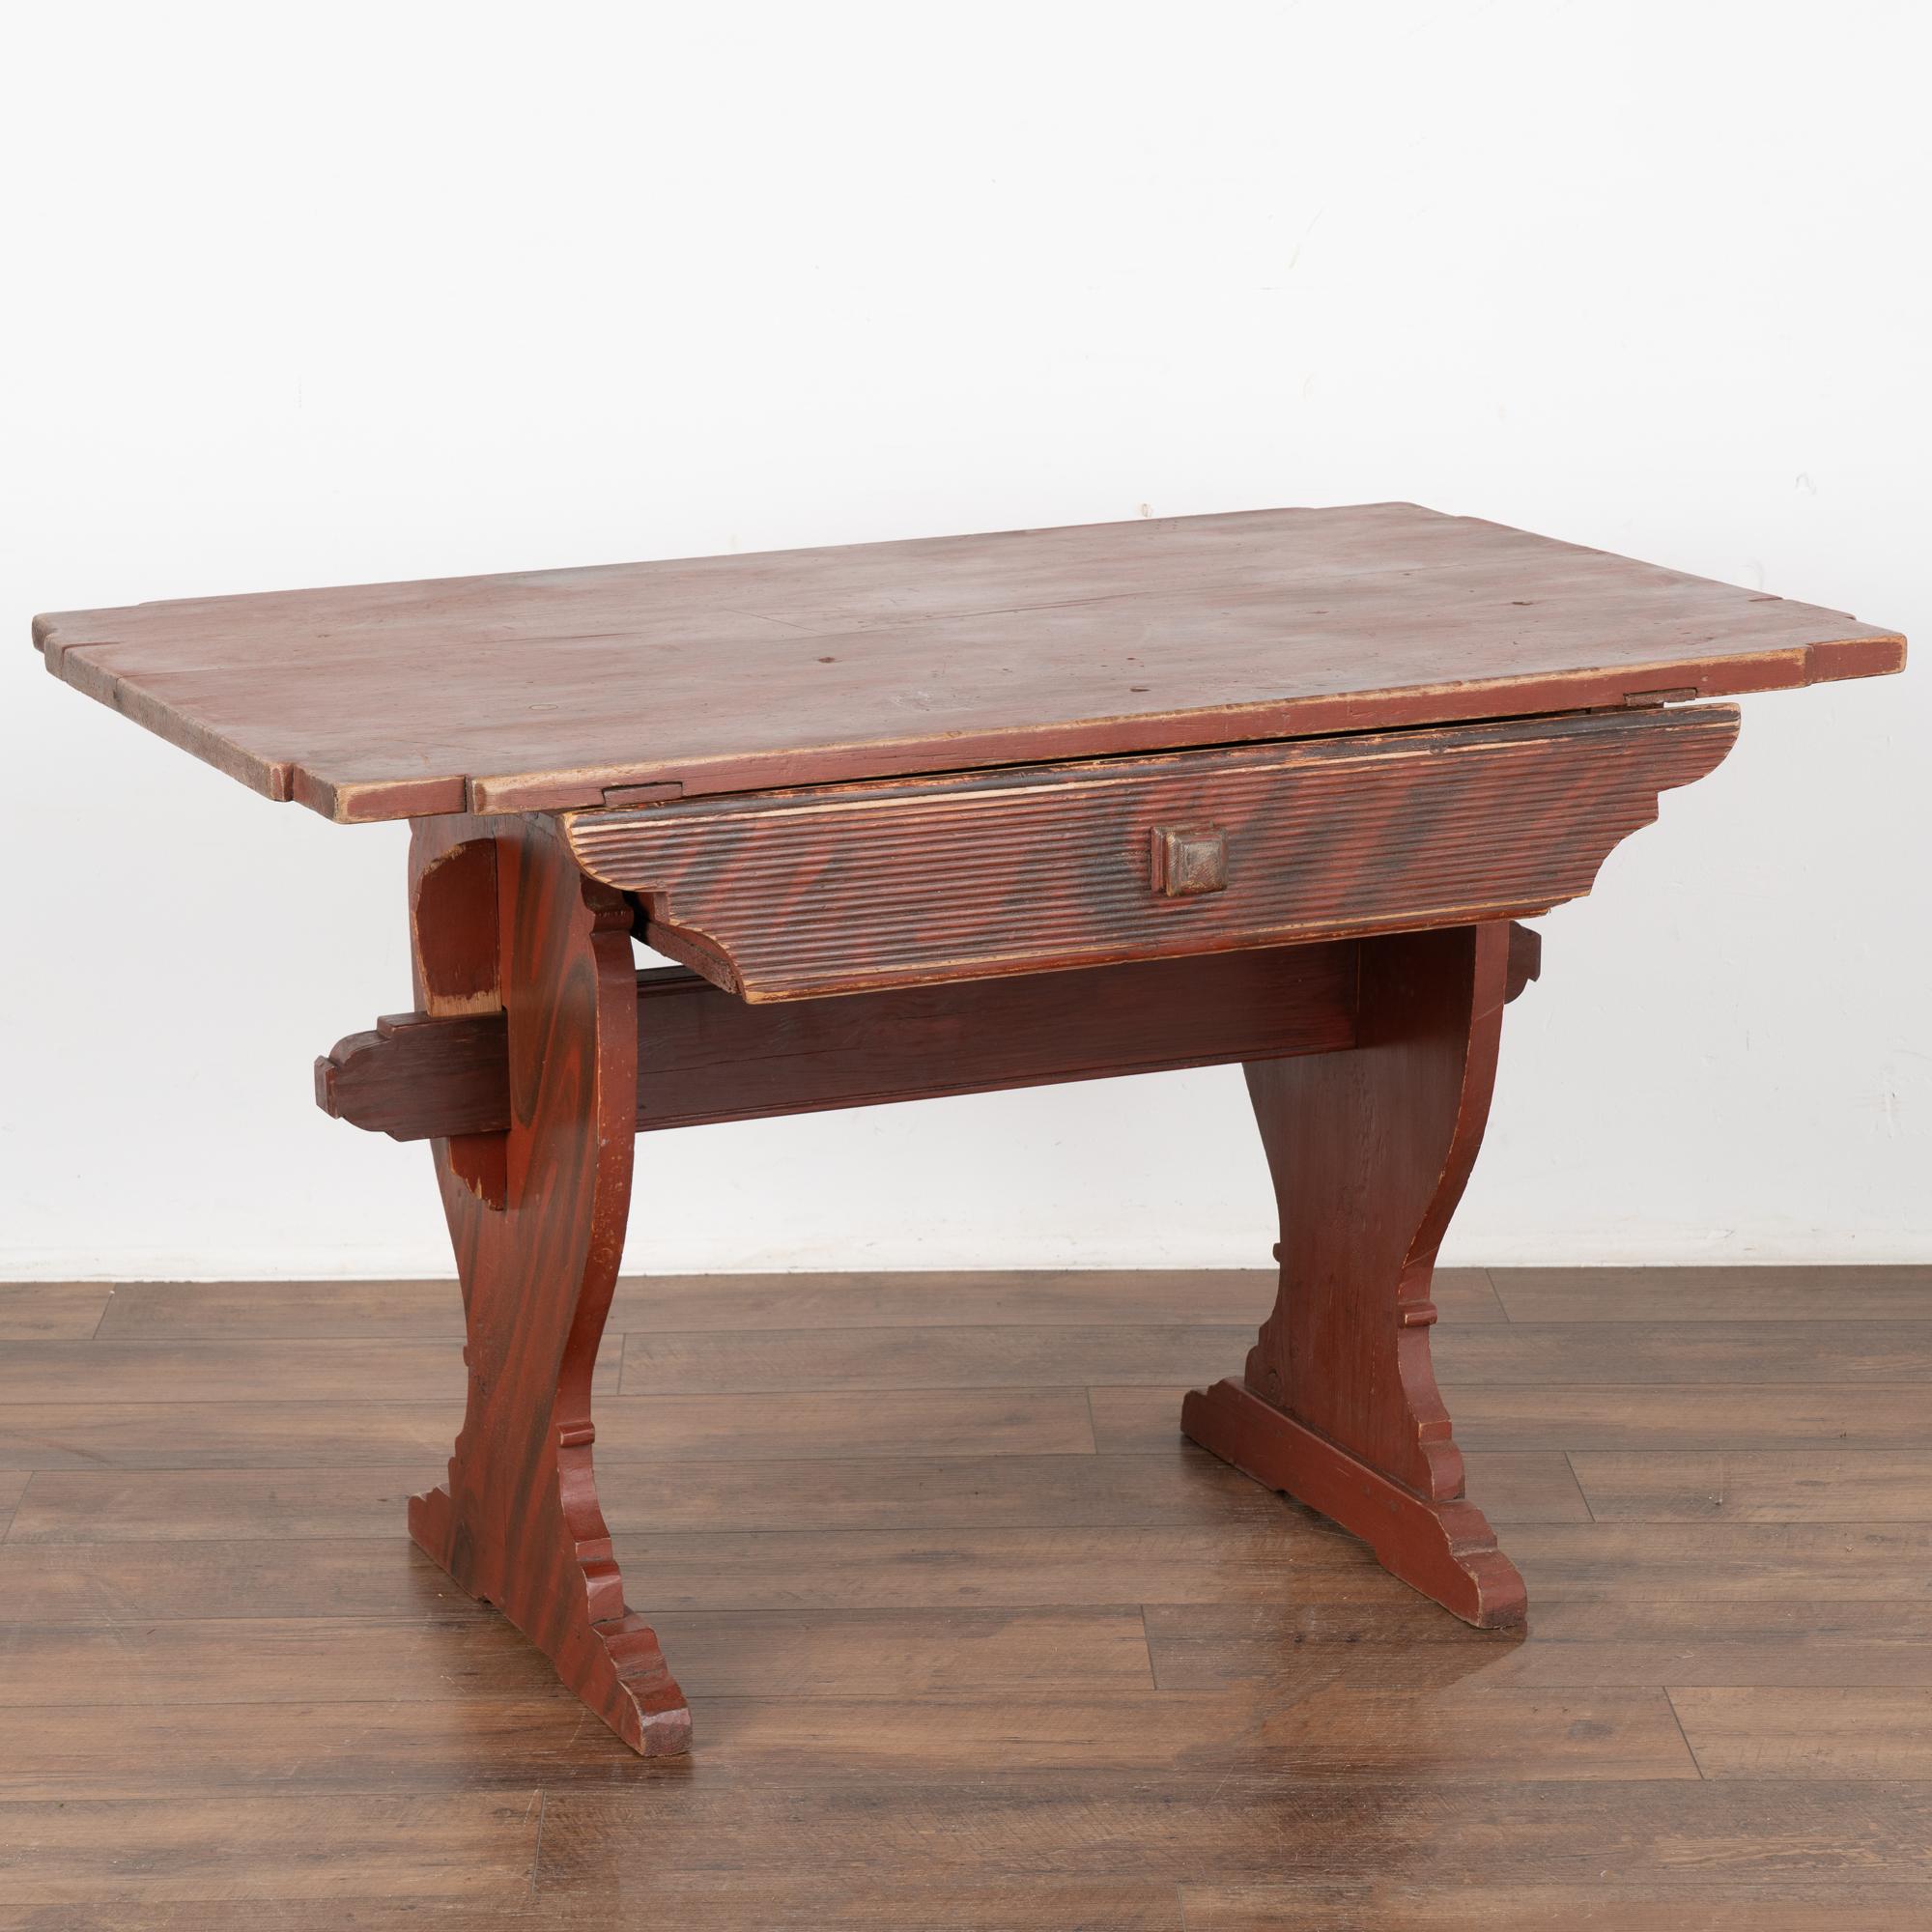 Dieser herrliche Bauernhoftisch aus Kiefernholz stammt aus der schwedischen Landschaft. Die ursprüngliche Lackierung aus Holzimitat entsprach dem traditionellen Stil der damaligen Zeit (fast 200 Jahre alt).
Die originale volkskünstlerische Bemalung